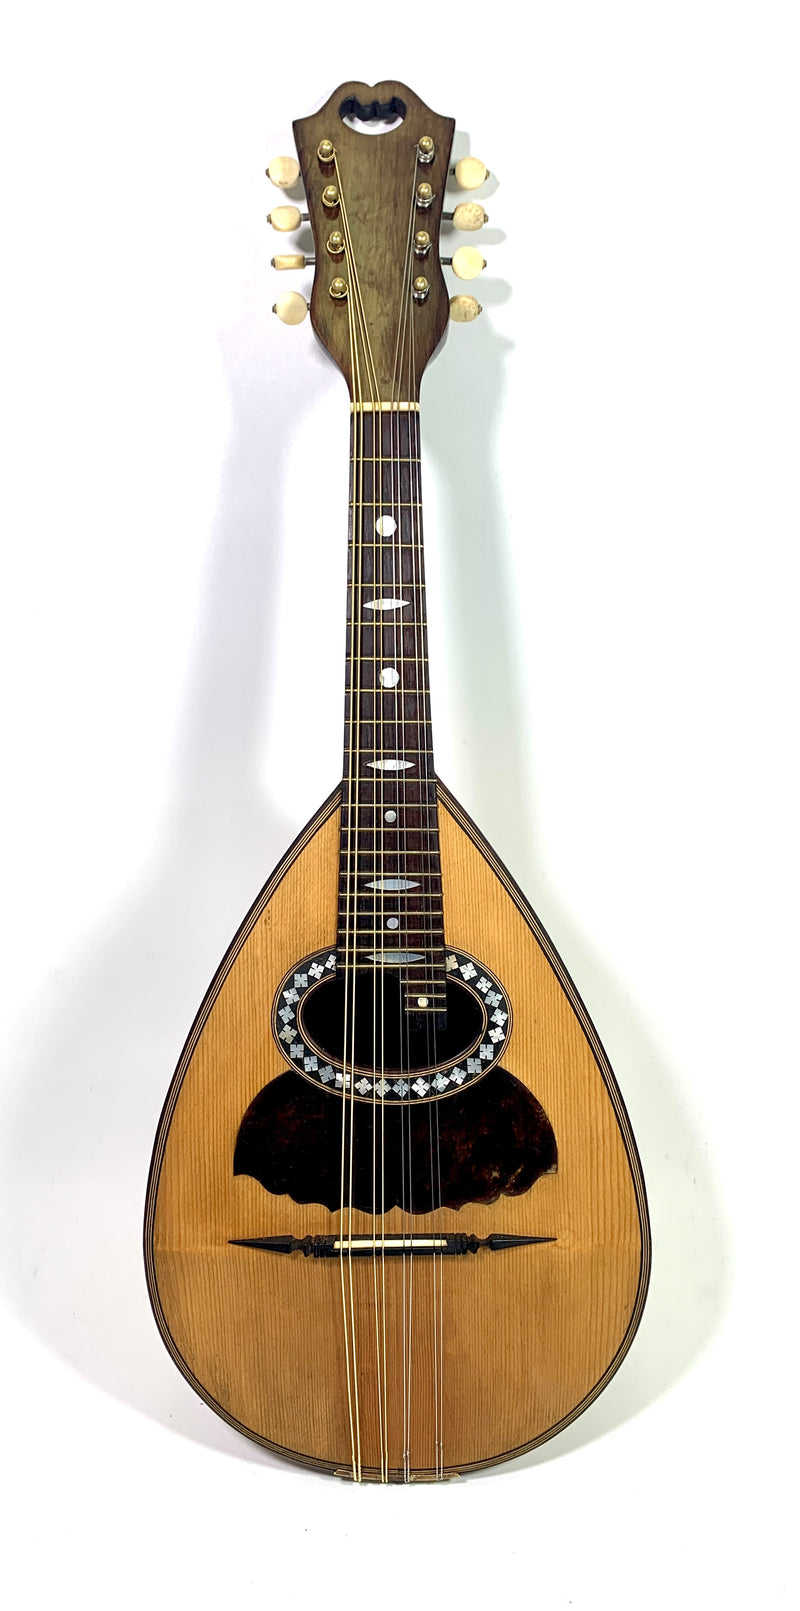 Luigi Tamagno mandolin from 1907